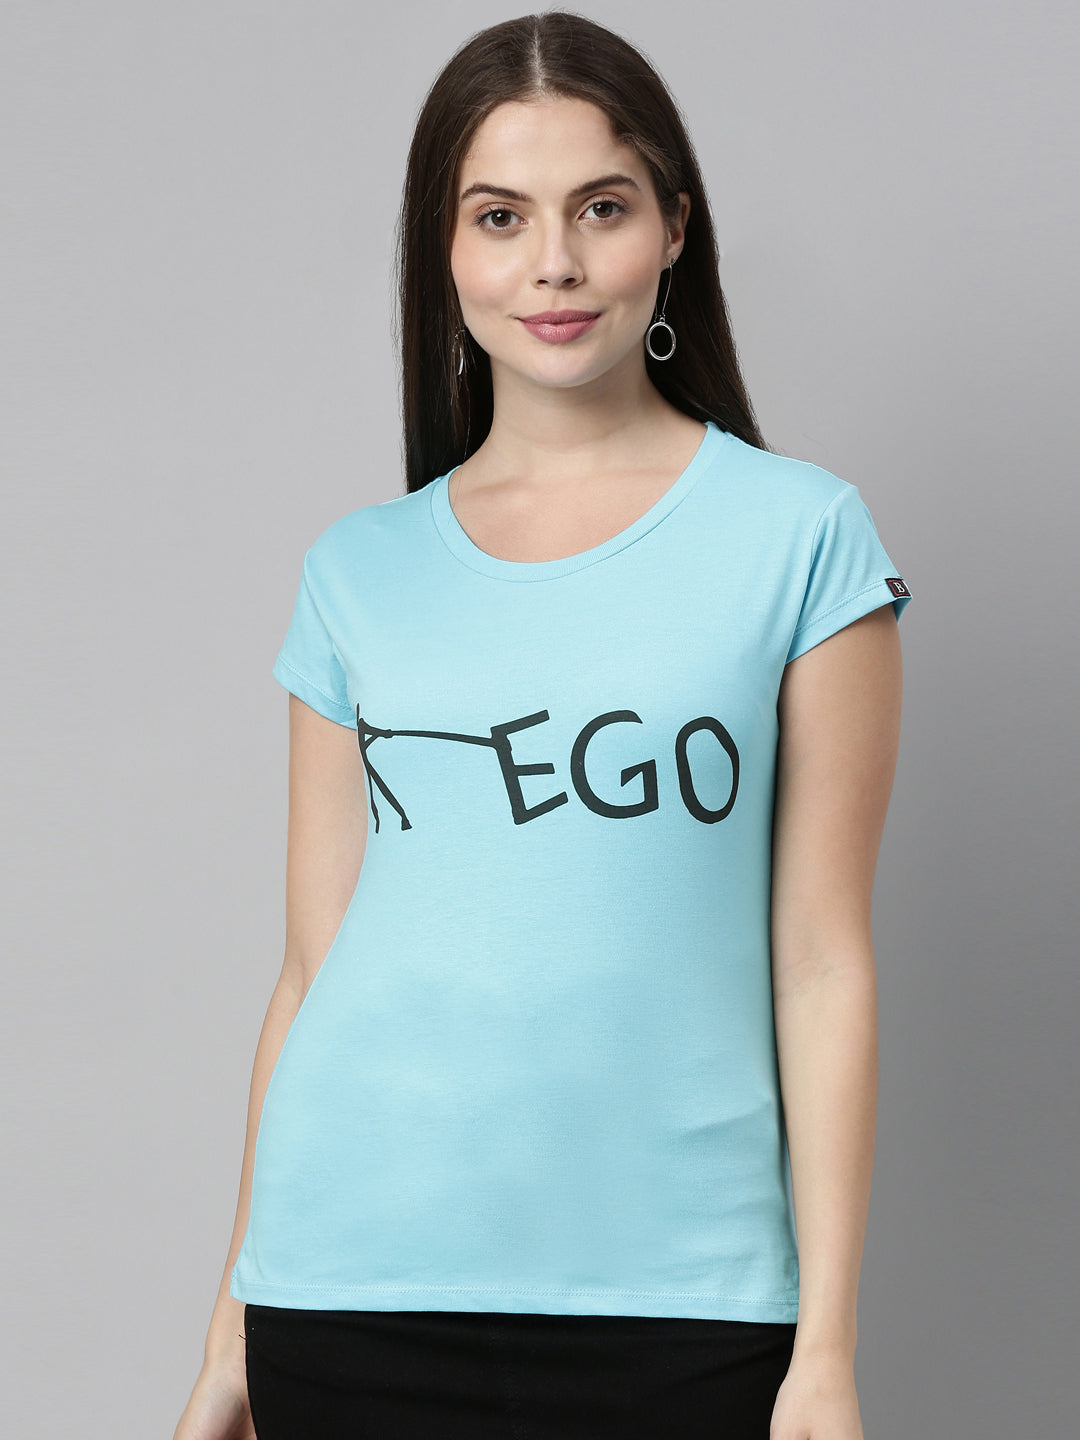 Ego T-shirt Women's Graphic Tees Bushirt   